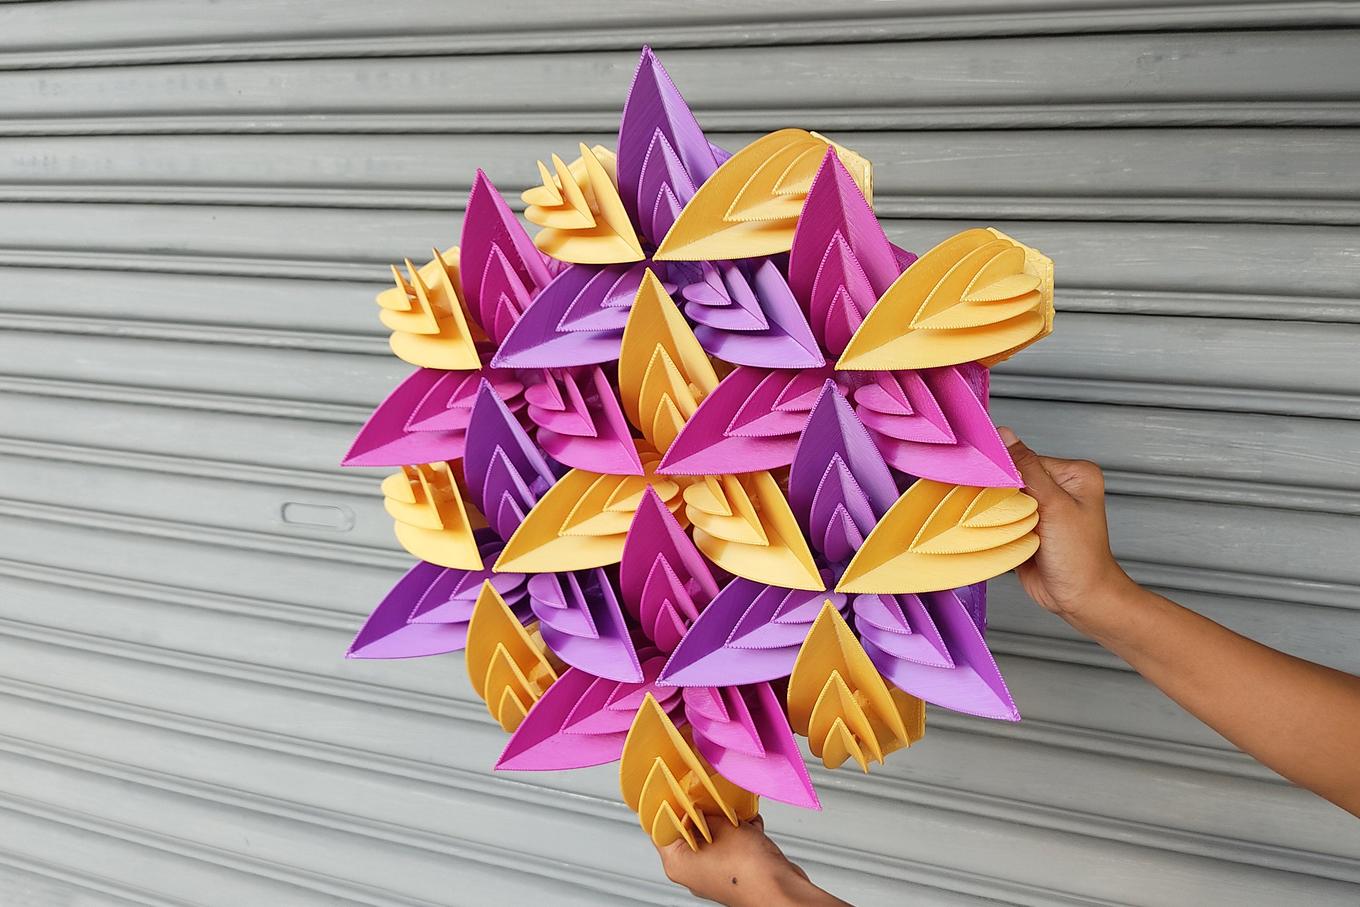 Fractal Mandala | Herschel Shapiro | Contemporary Parametric 3D Wall Art